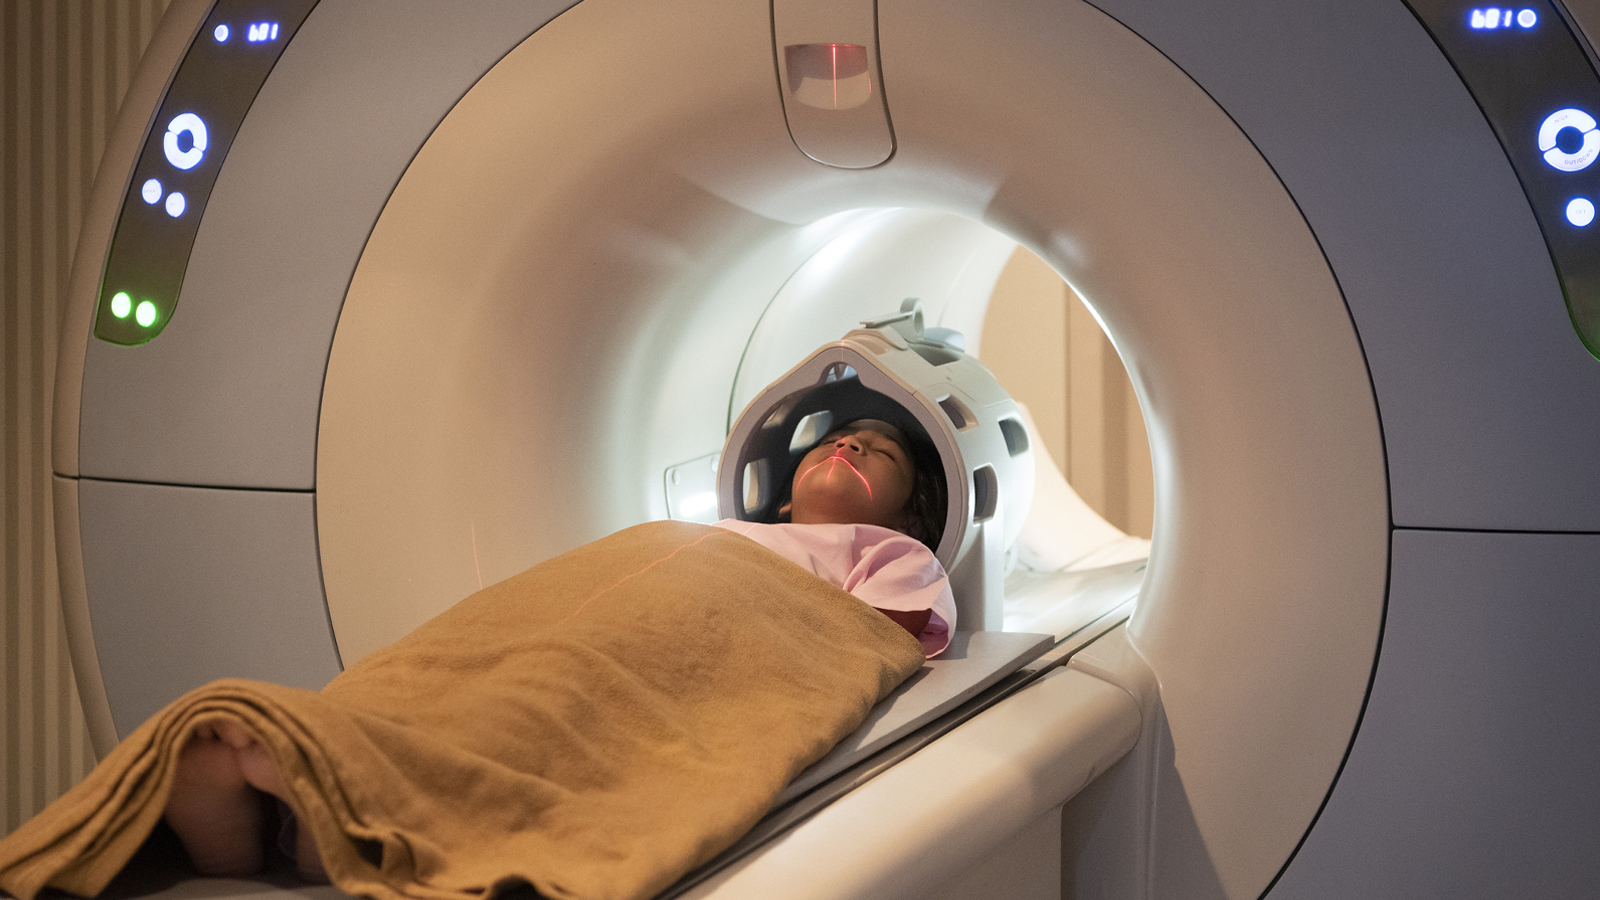 Child inside MRI scanner